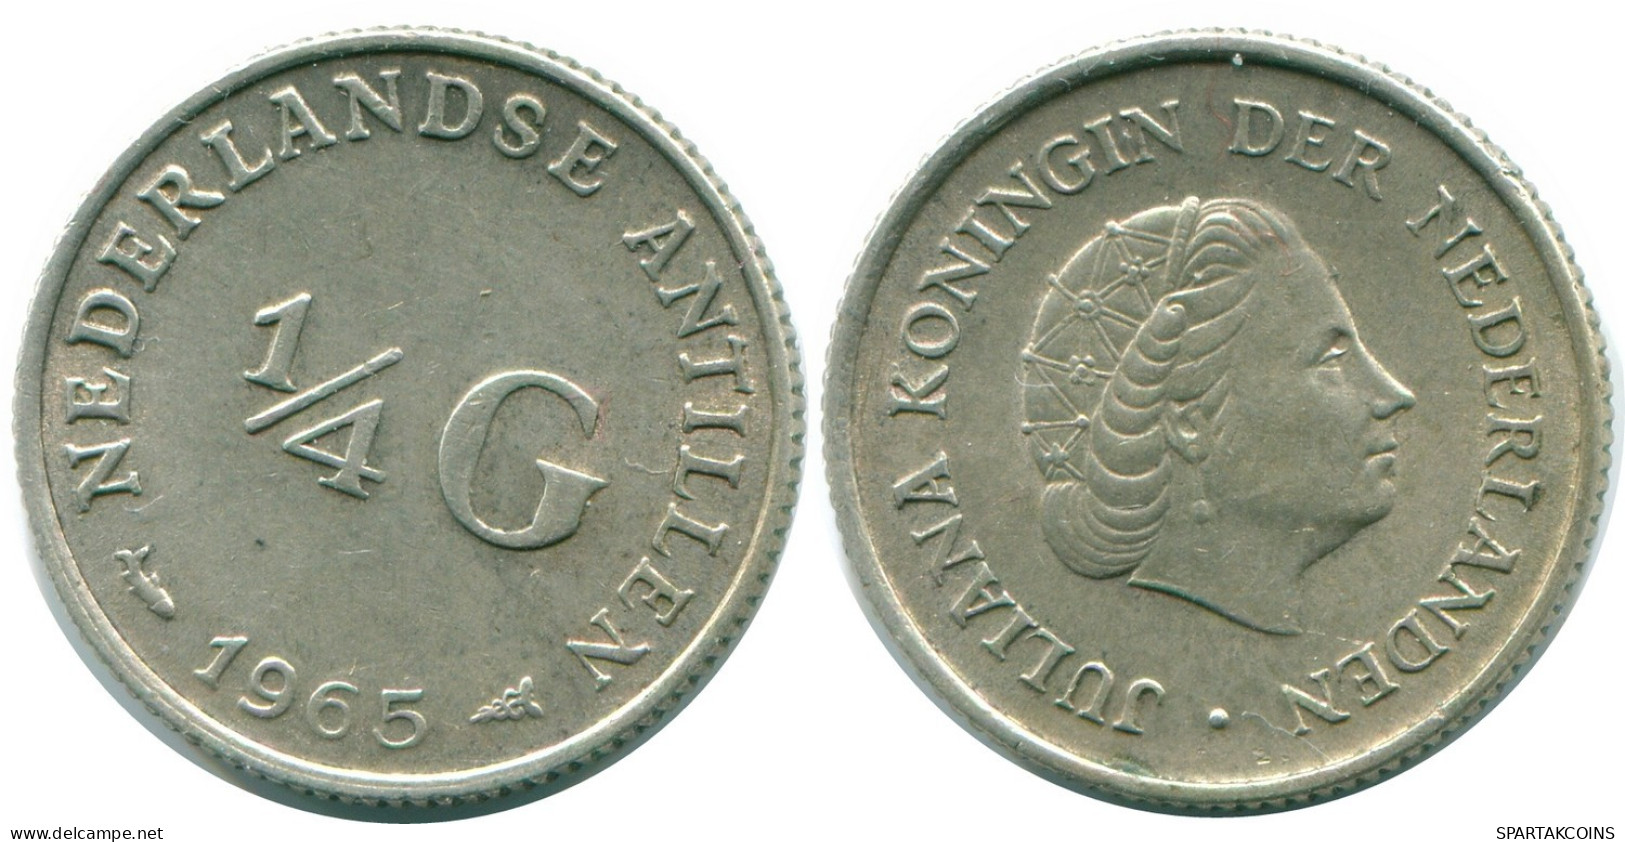 1/4 GULDEN 1965 NIEDERLÄNDISCHE ANTILLEN SILBER Koloniale Münze #NL11422.4.D.A - Antilles Néerlandaises